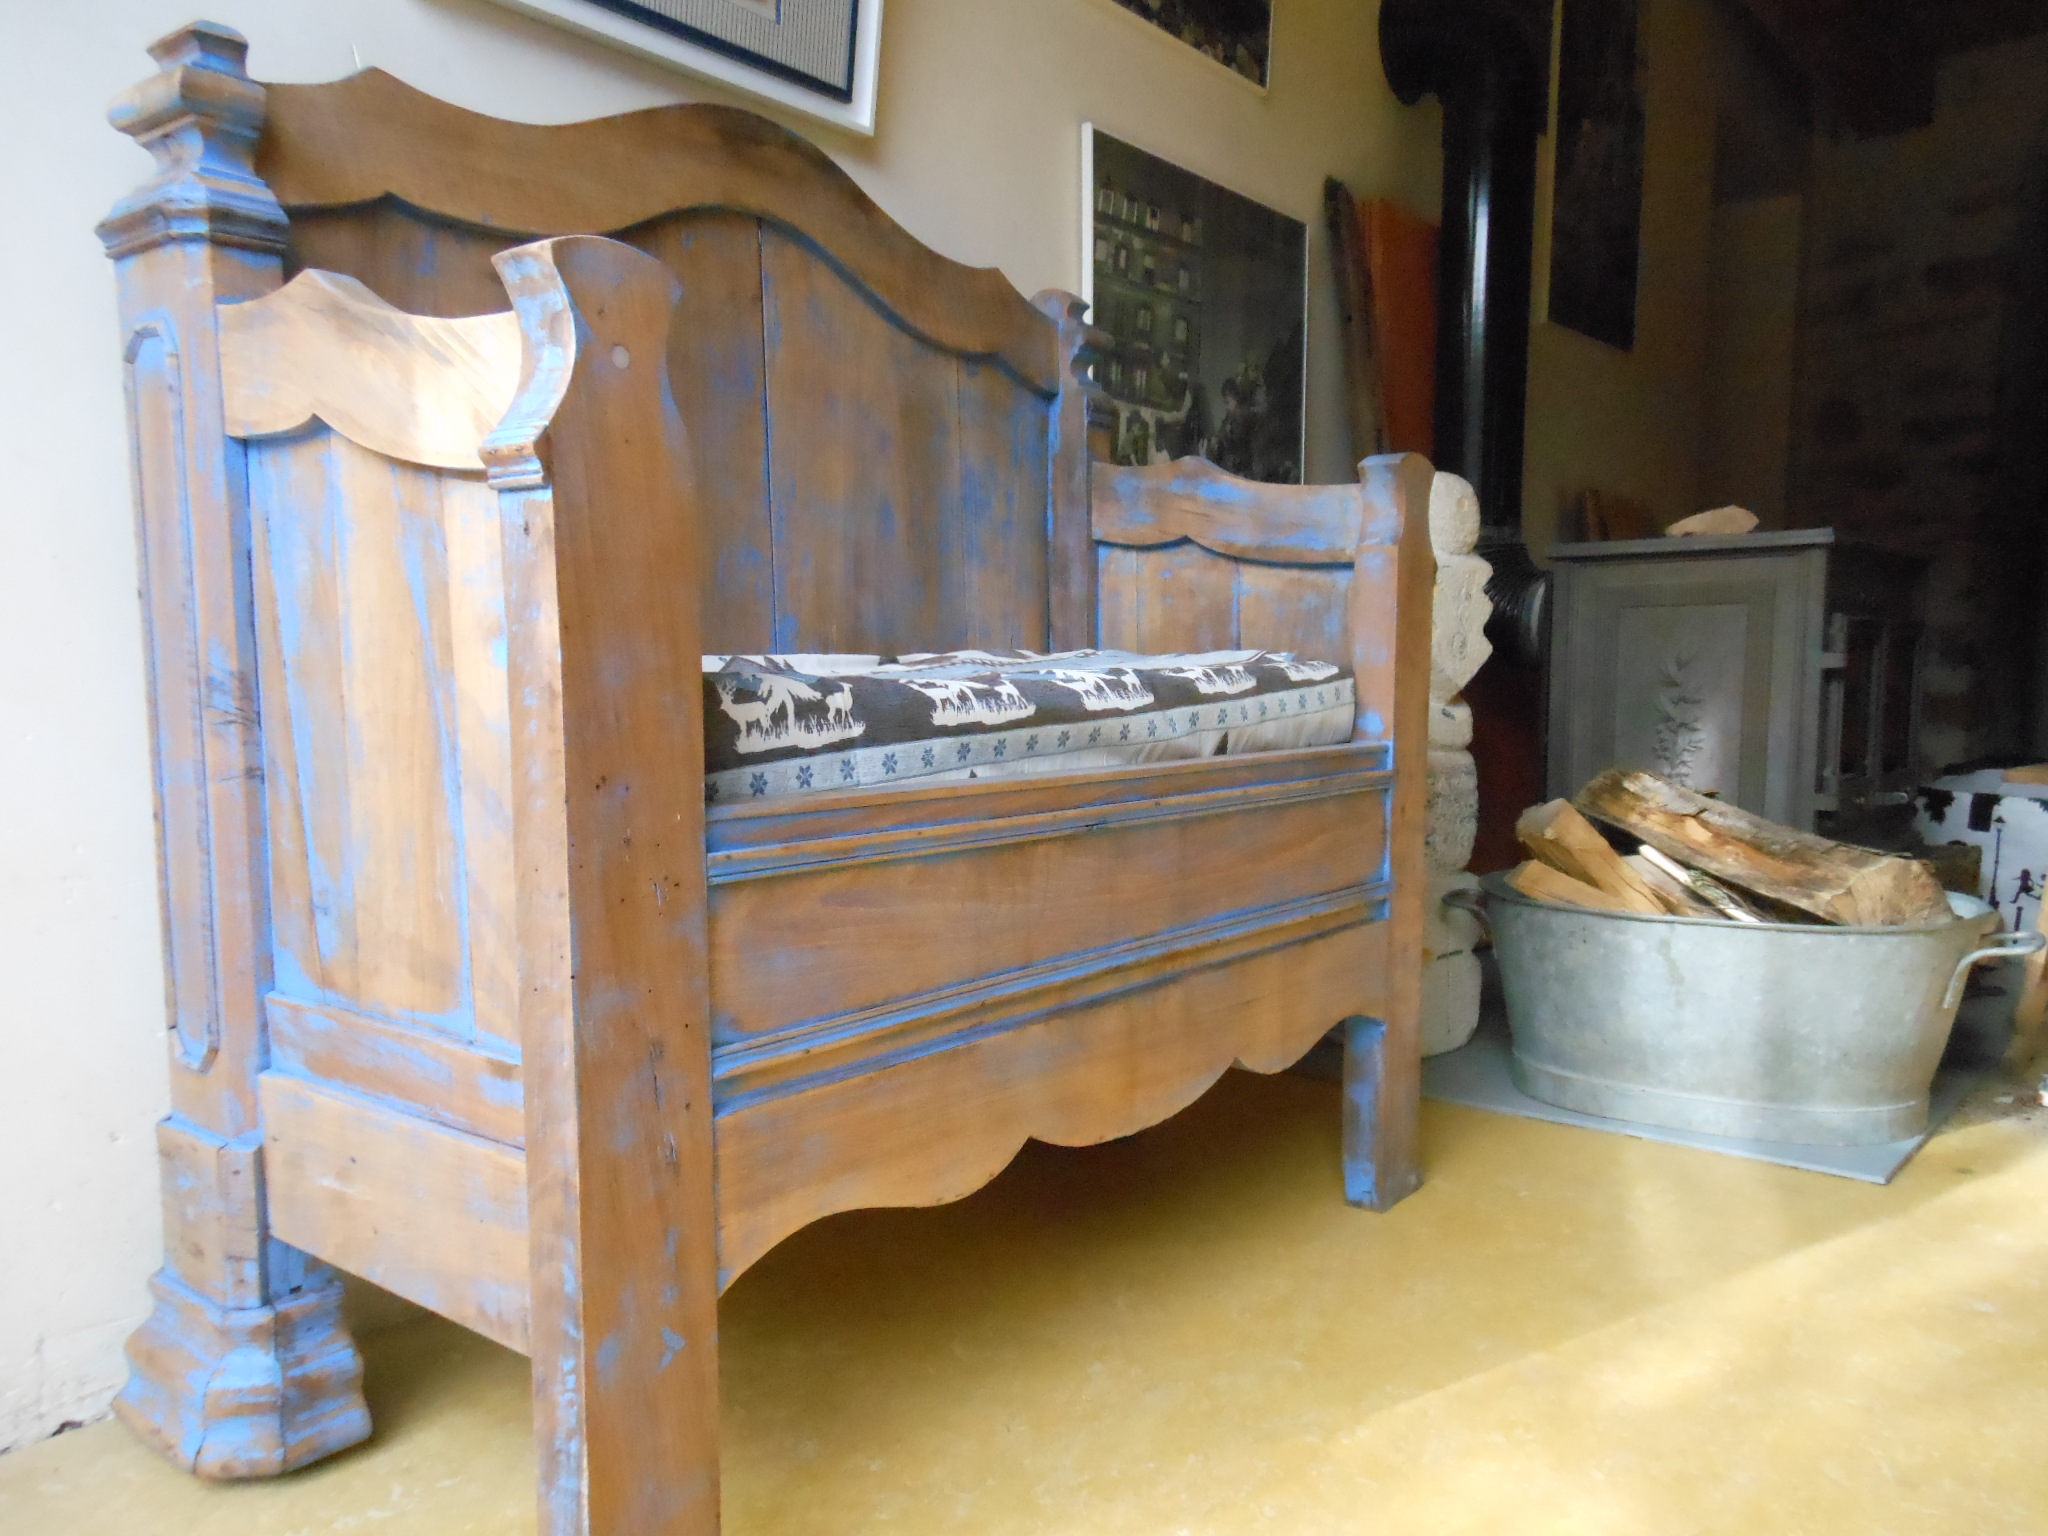 On enlève ses chaussures à l'entrée du gite la maison bleue en Ardèche. Enfin le moyen de s'assoir ! Fabrication ardéchoise de surcroit.